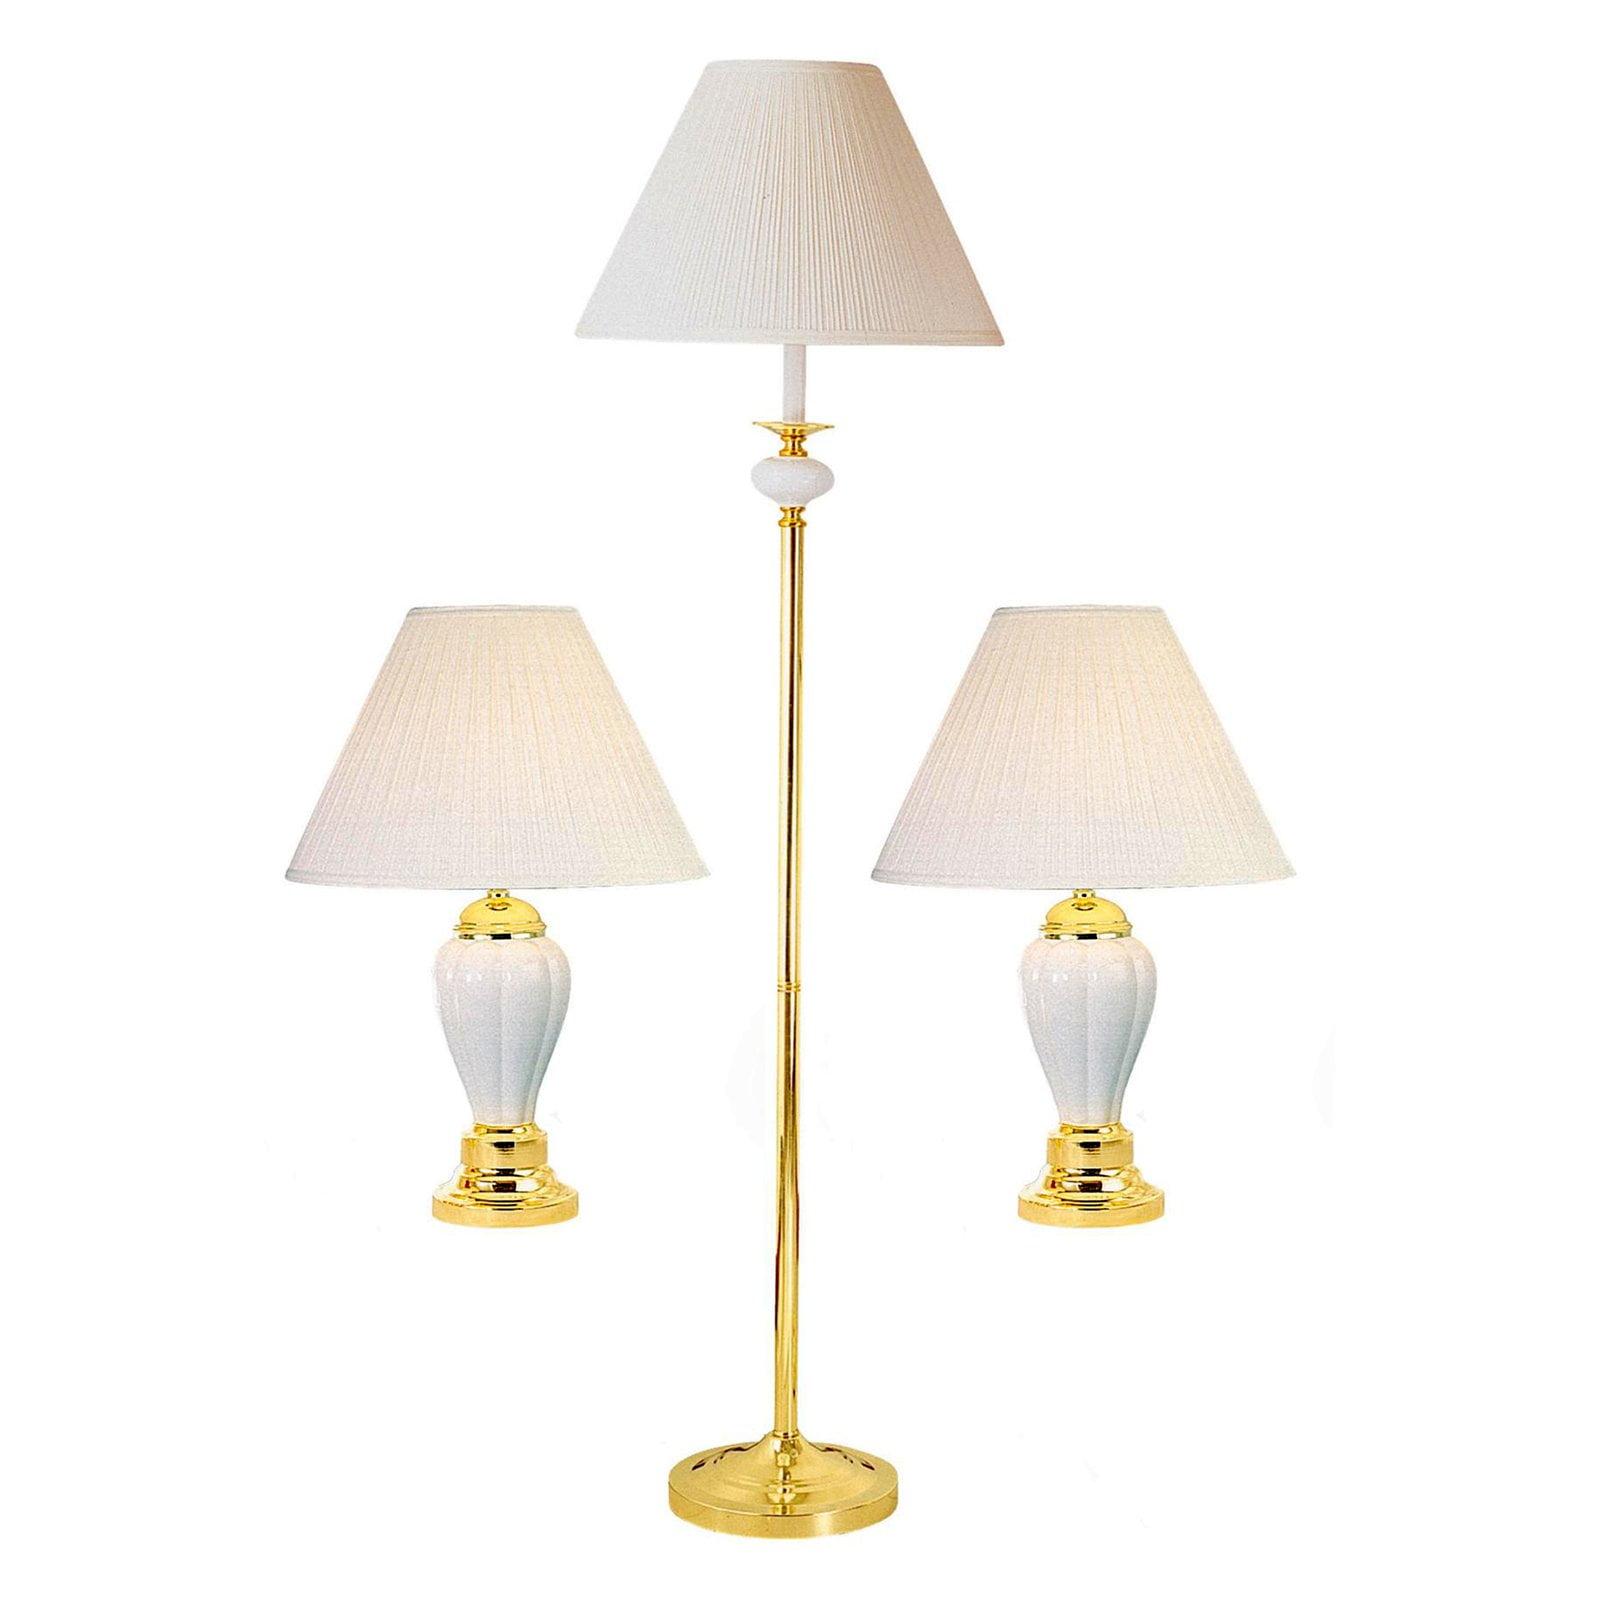 Elegant Gold and Black Ceramic Lamp Set with Polished Finish